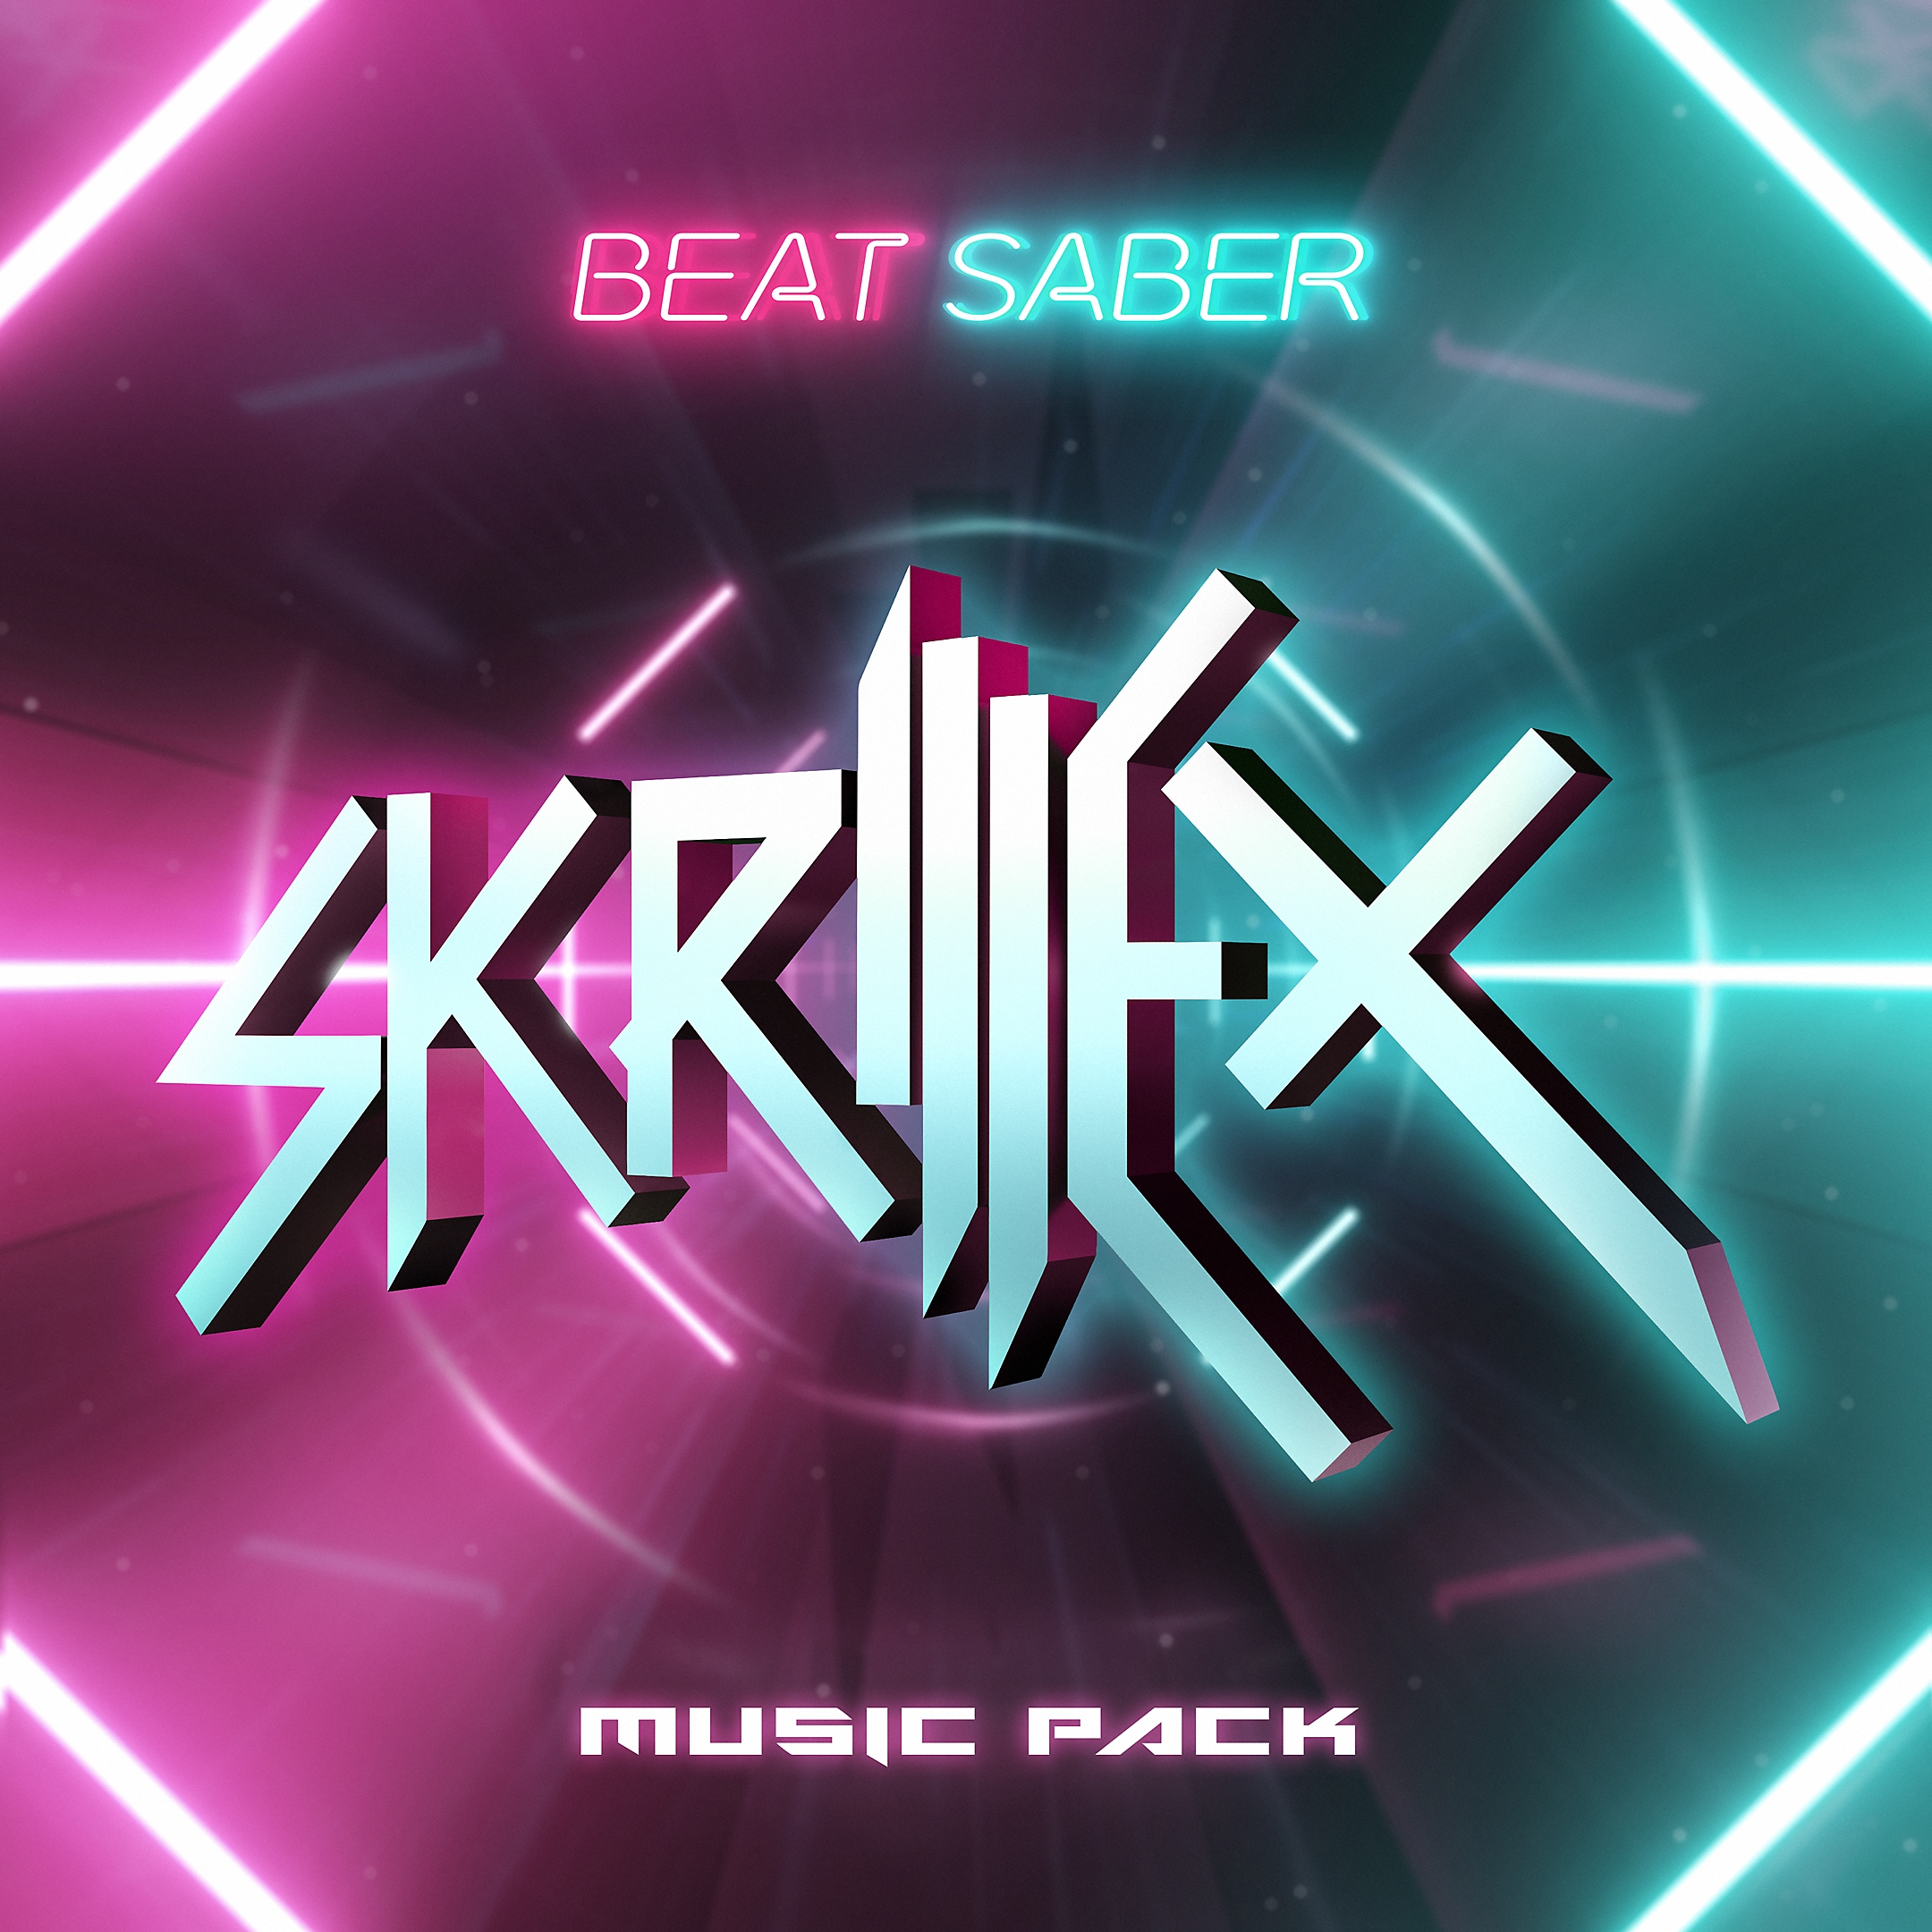 حزمة موسيقية لـ Skrillex في Beat Saber